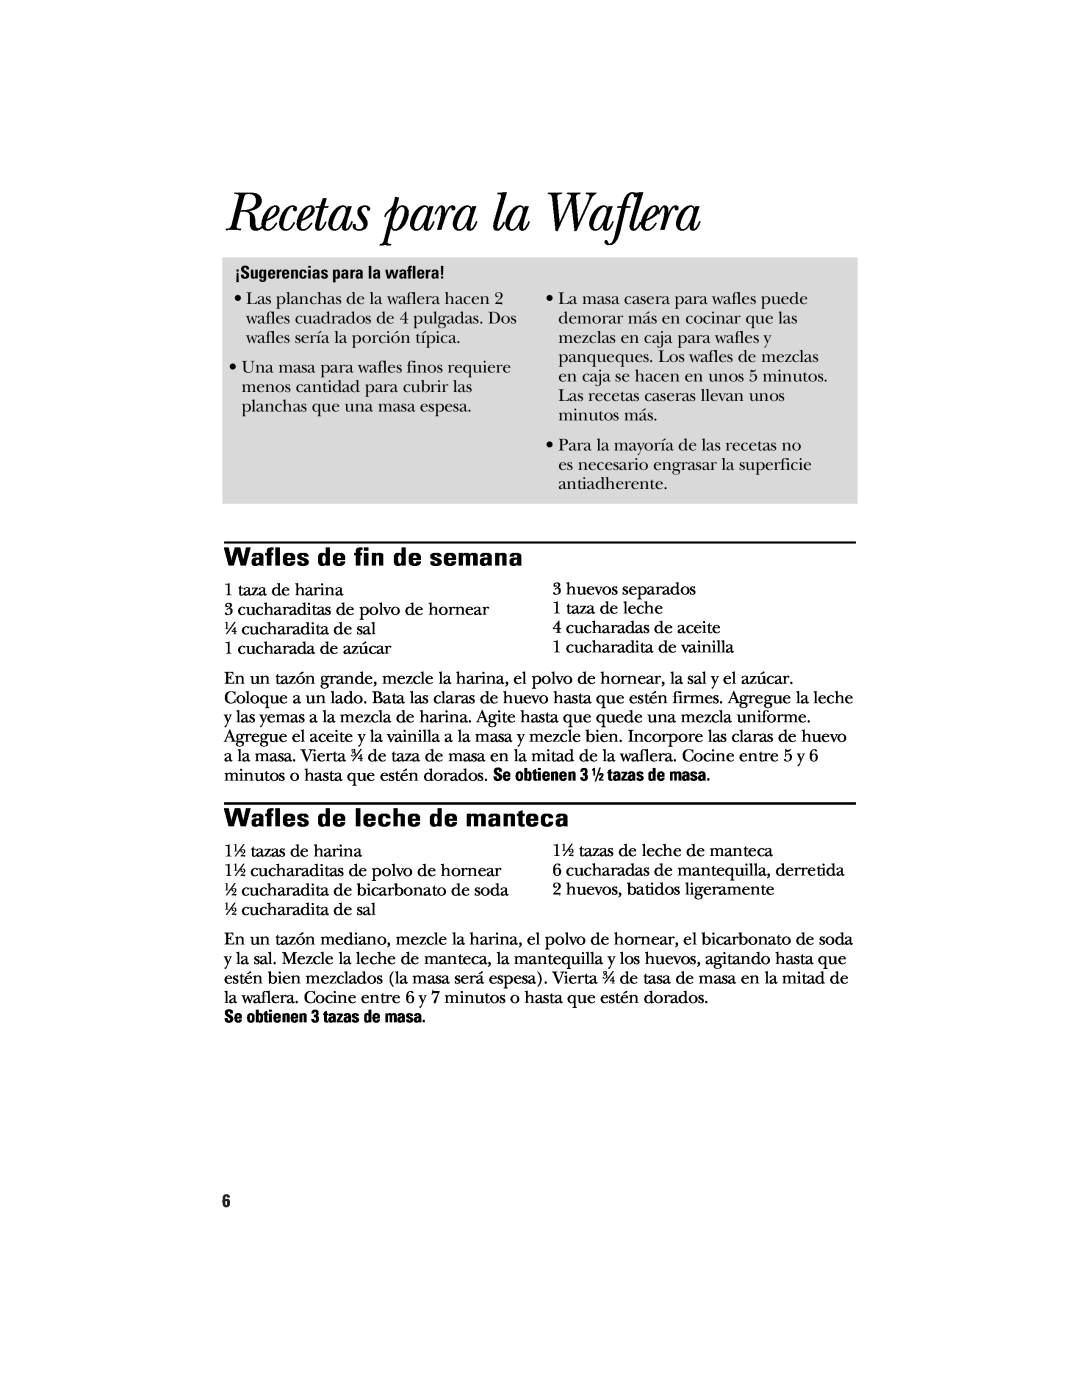 GE 840085700, 106582 manual Recetas para la Waflera, Wafles de fin de semana, Wafles de leche de manteca 